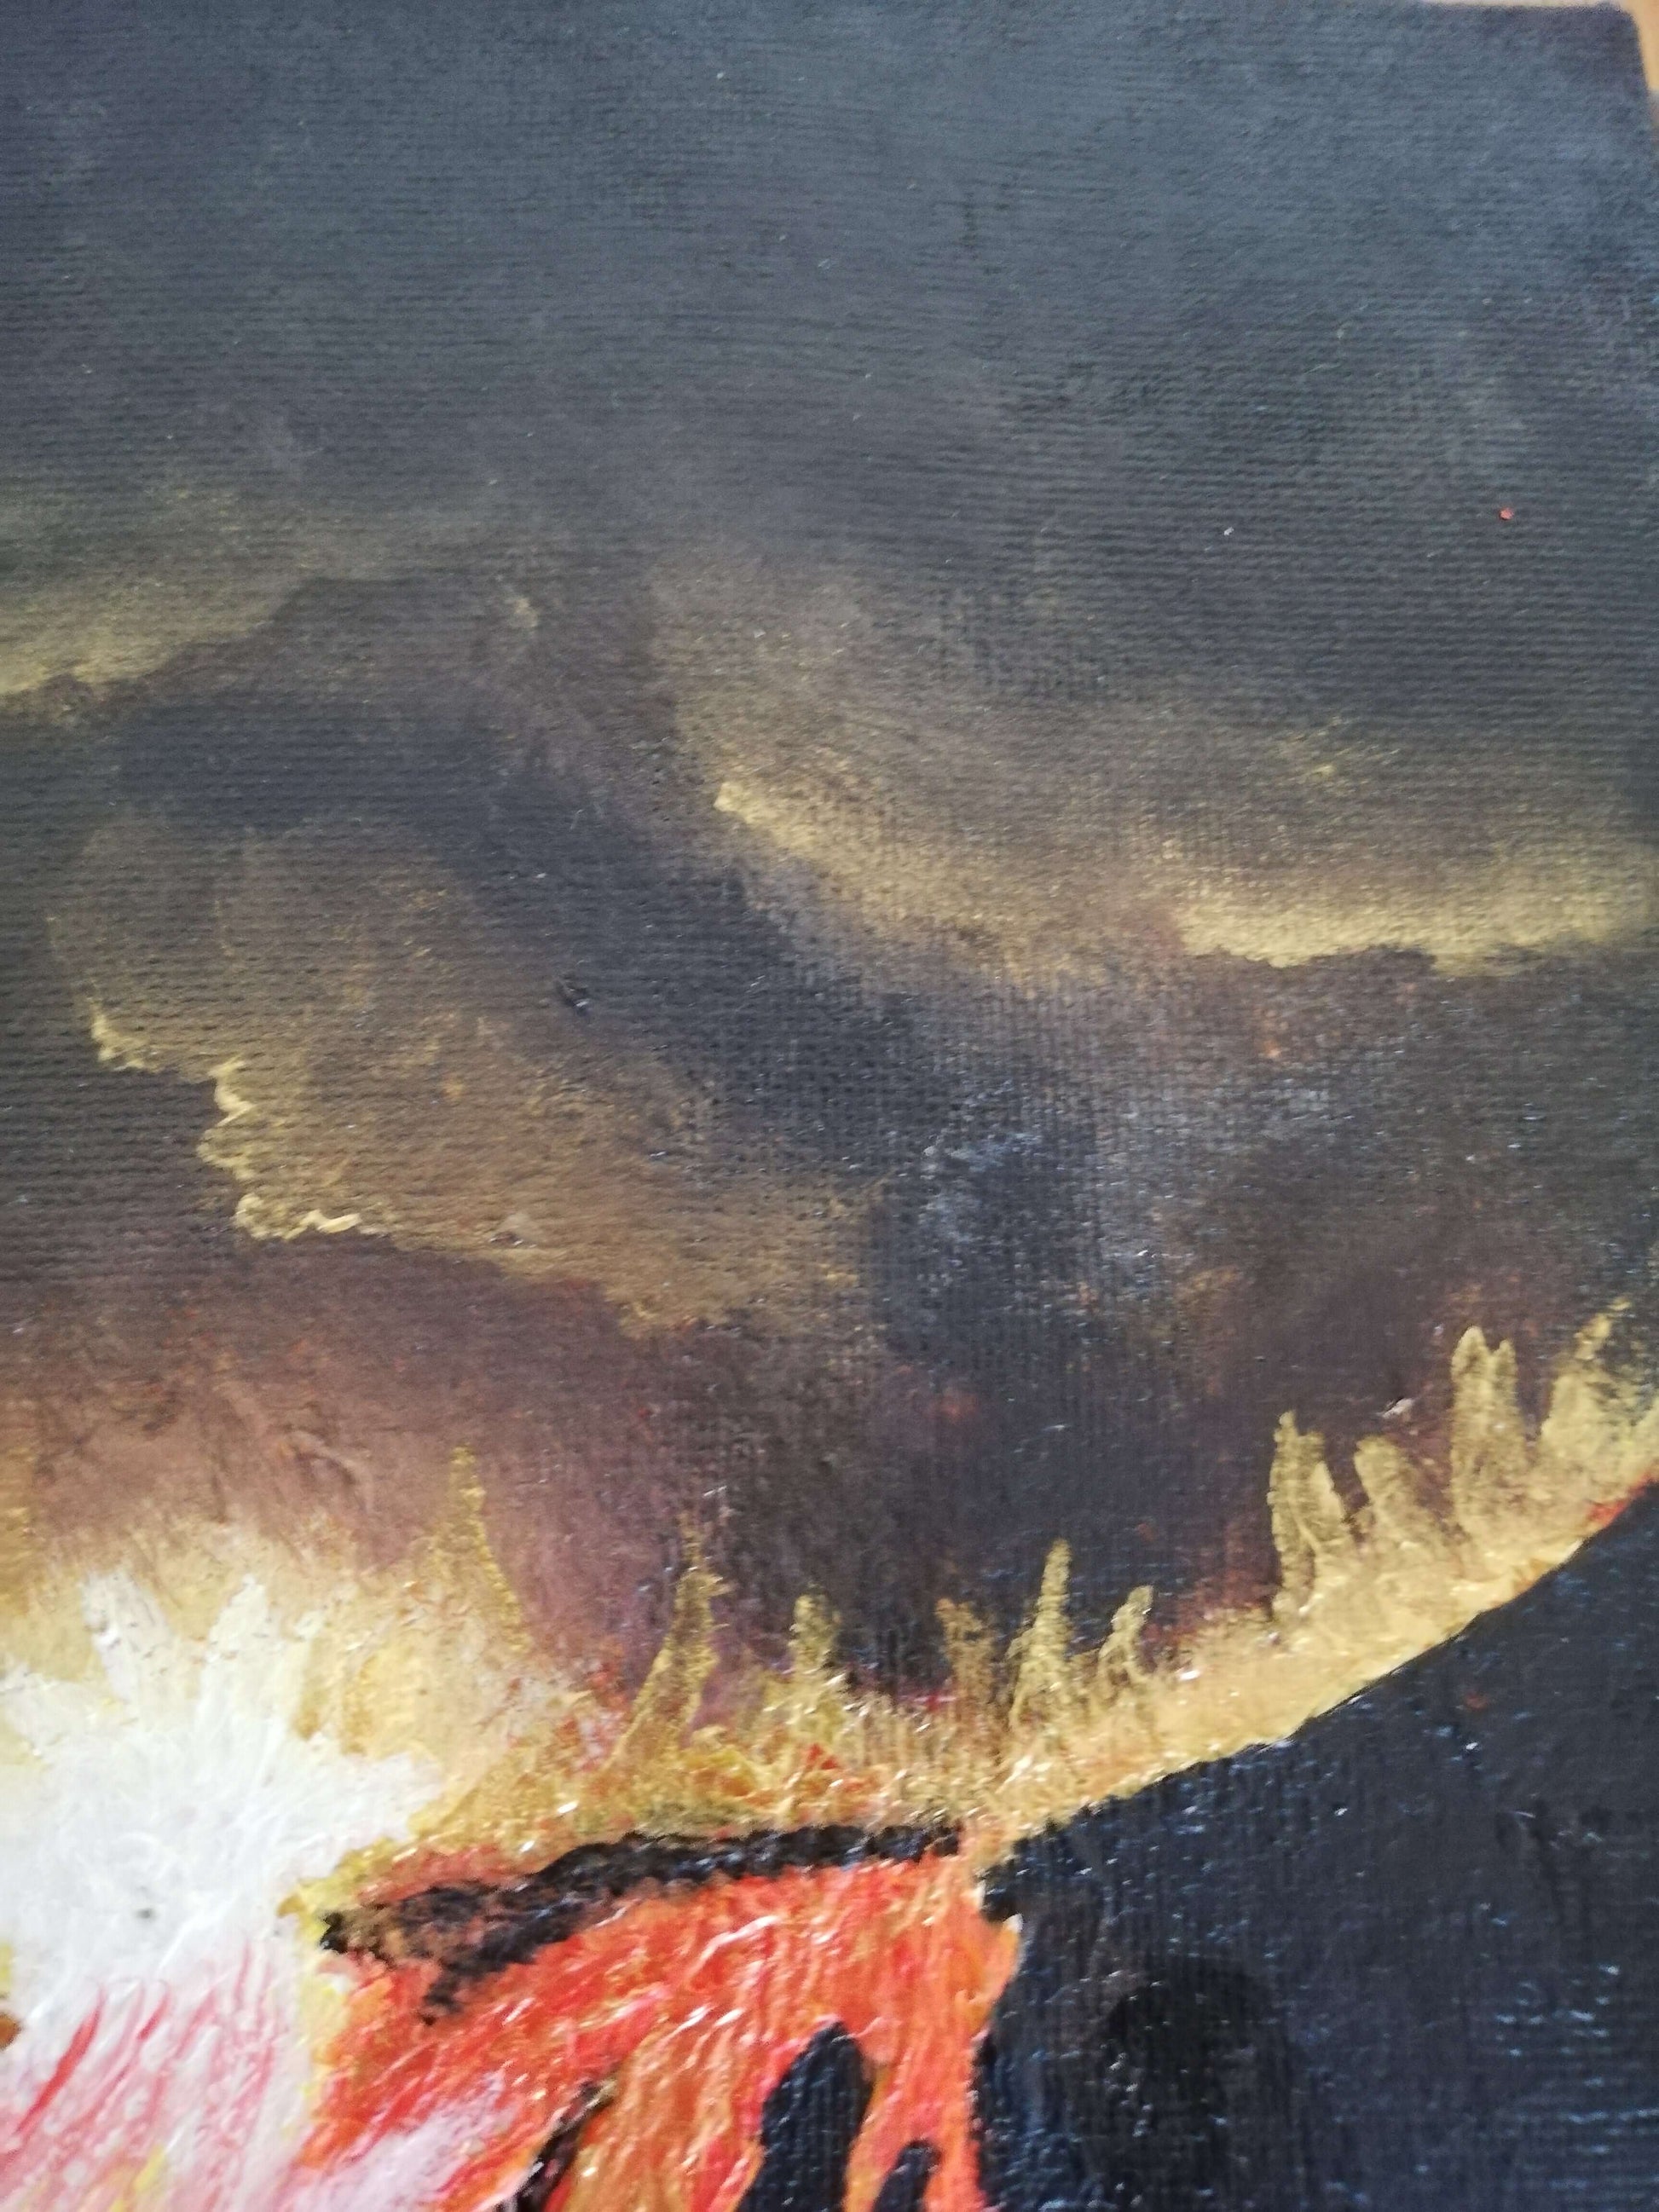 Eruption. ©Ian Garrett 2020. Acrylic on Canvas 10 x 8 inches.